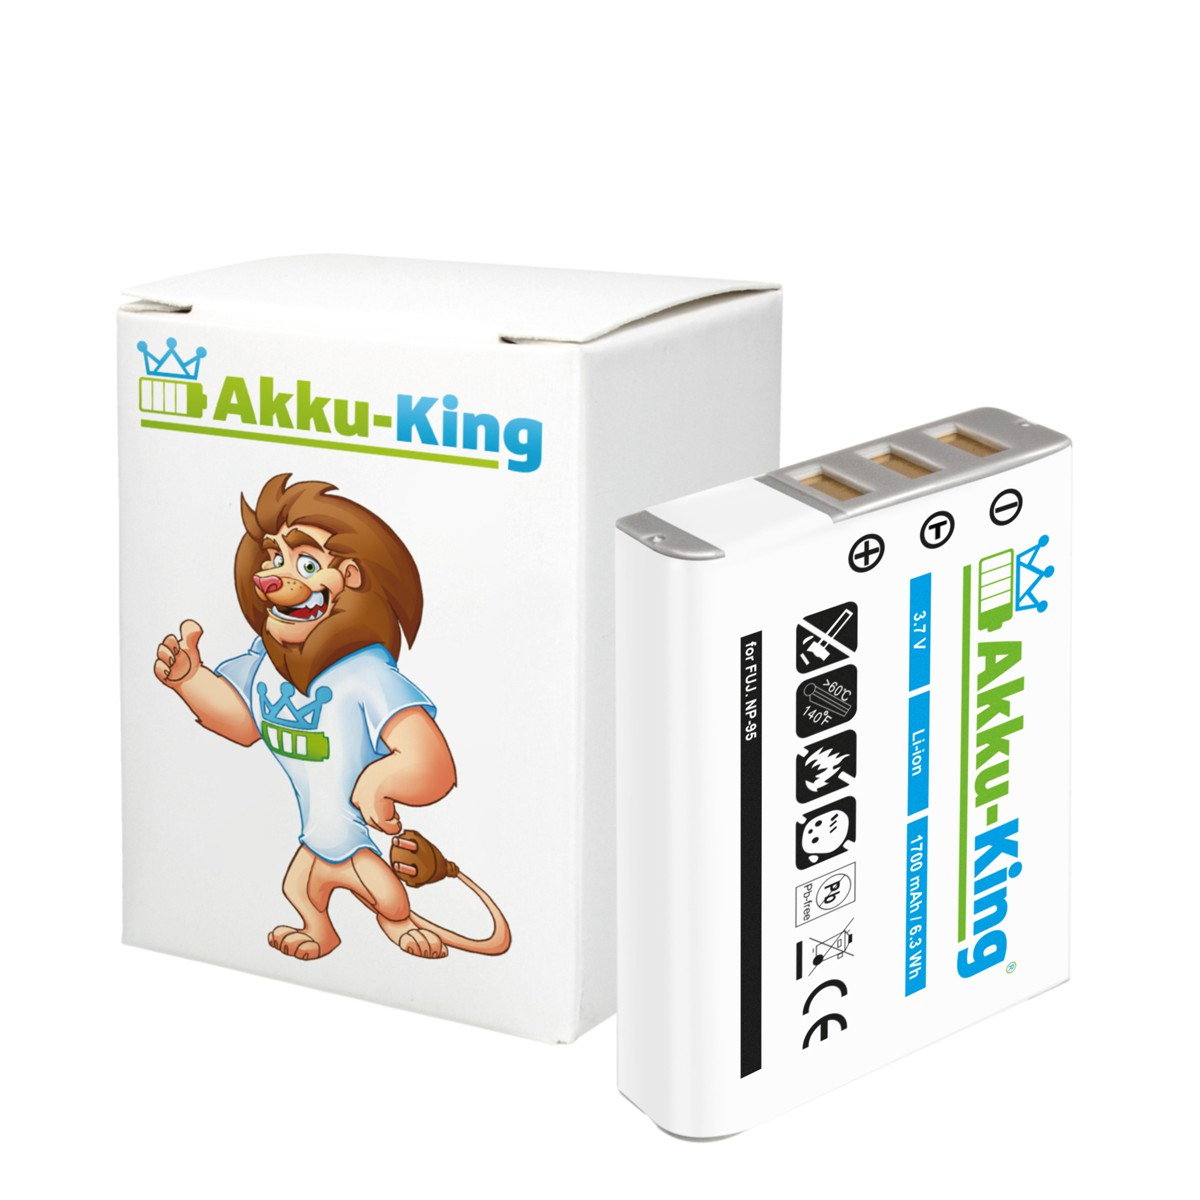 AKKU-KING Akku kompatibel mit Fuji Volt, 3.7 Kamera-Akku, Li-Ion 1700mAh NP-95